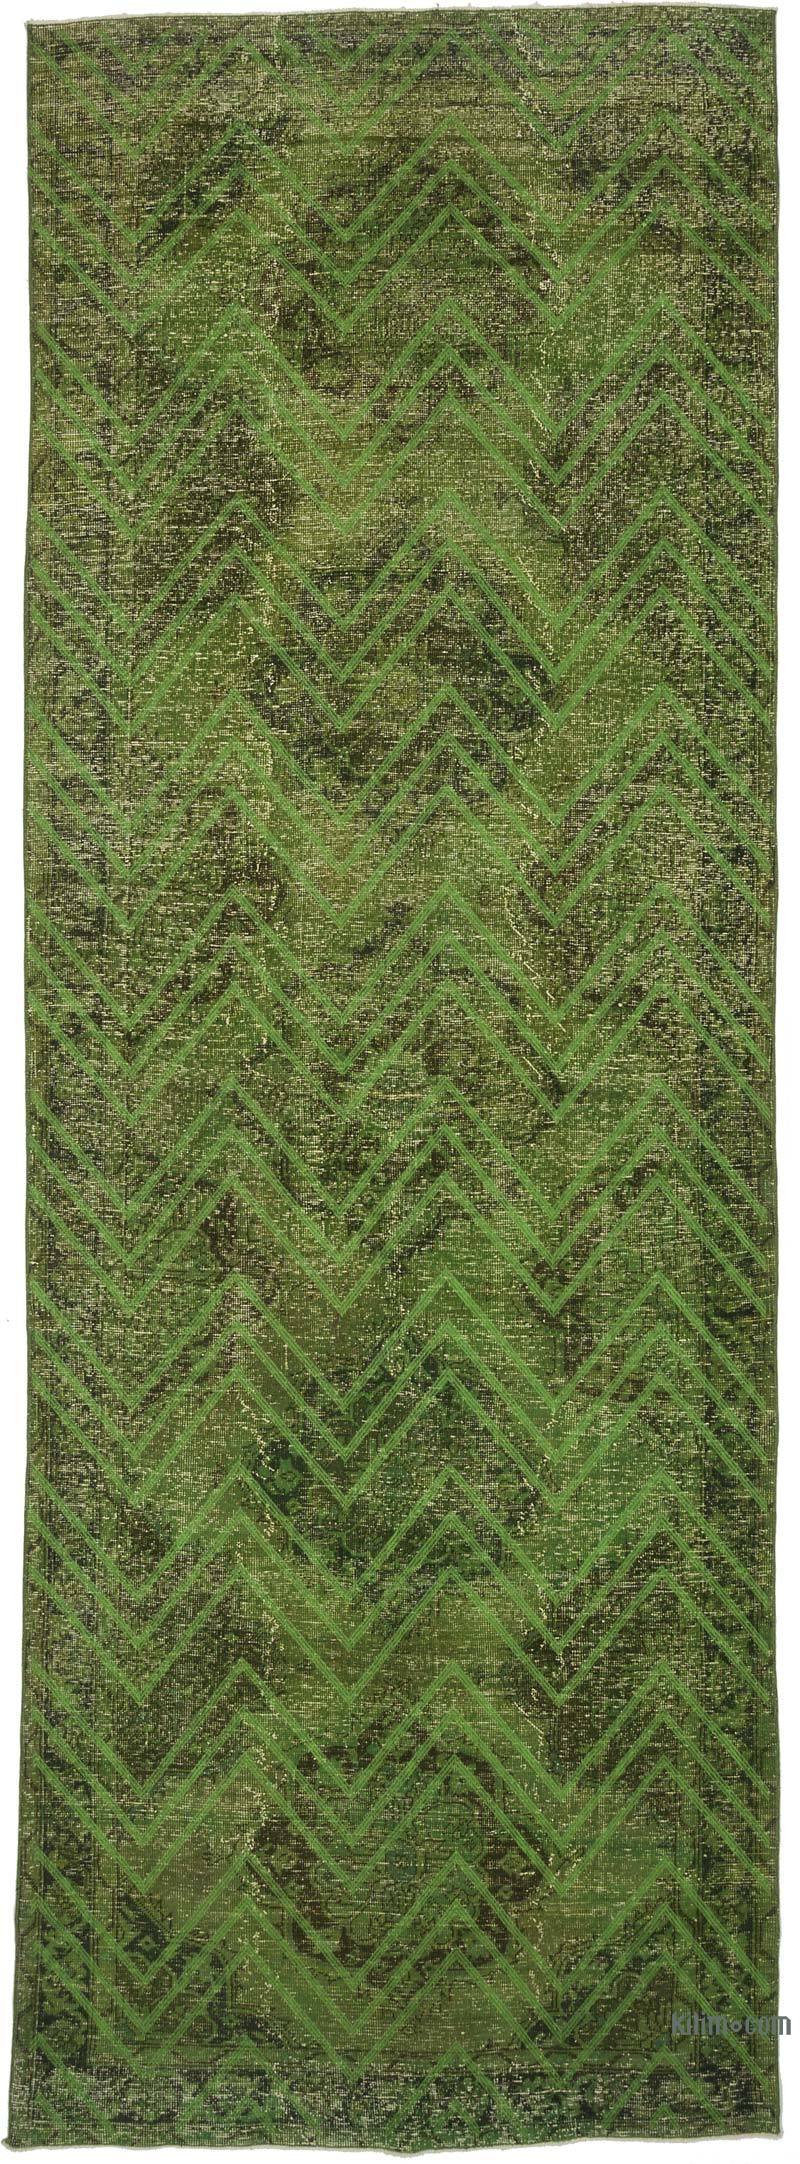 Yeşil İşlemeli ve Boyalı El Dokuma Vintage Halı - 148 cm x 406 cm - K0038731